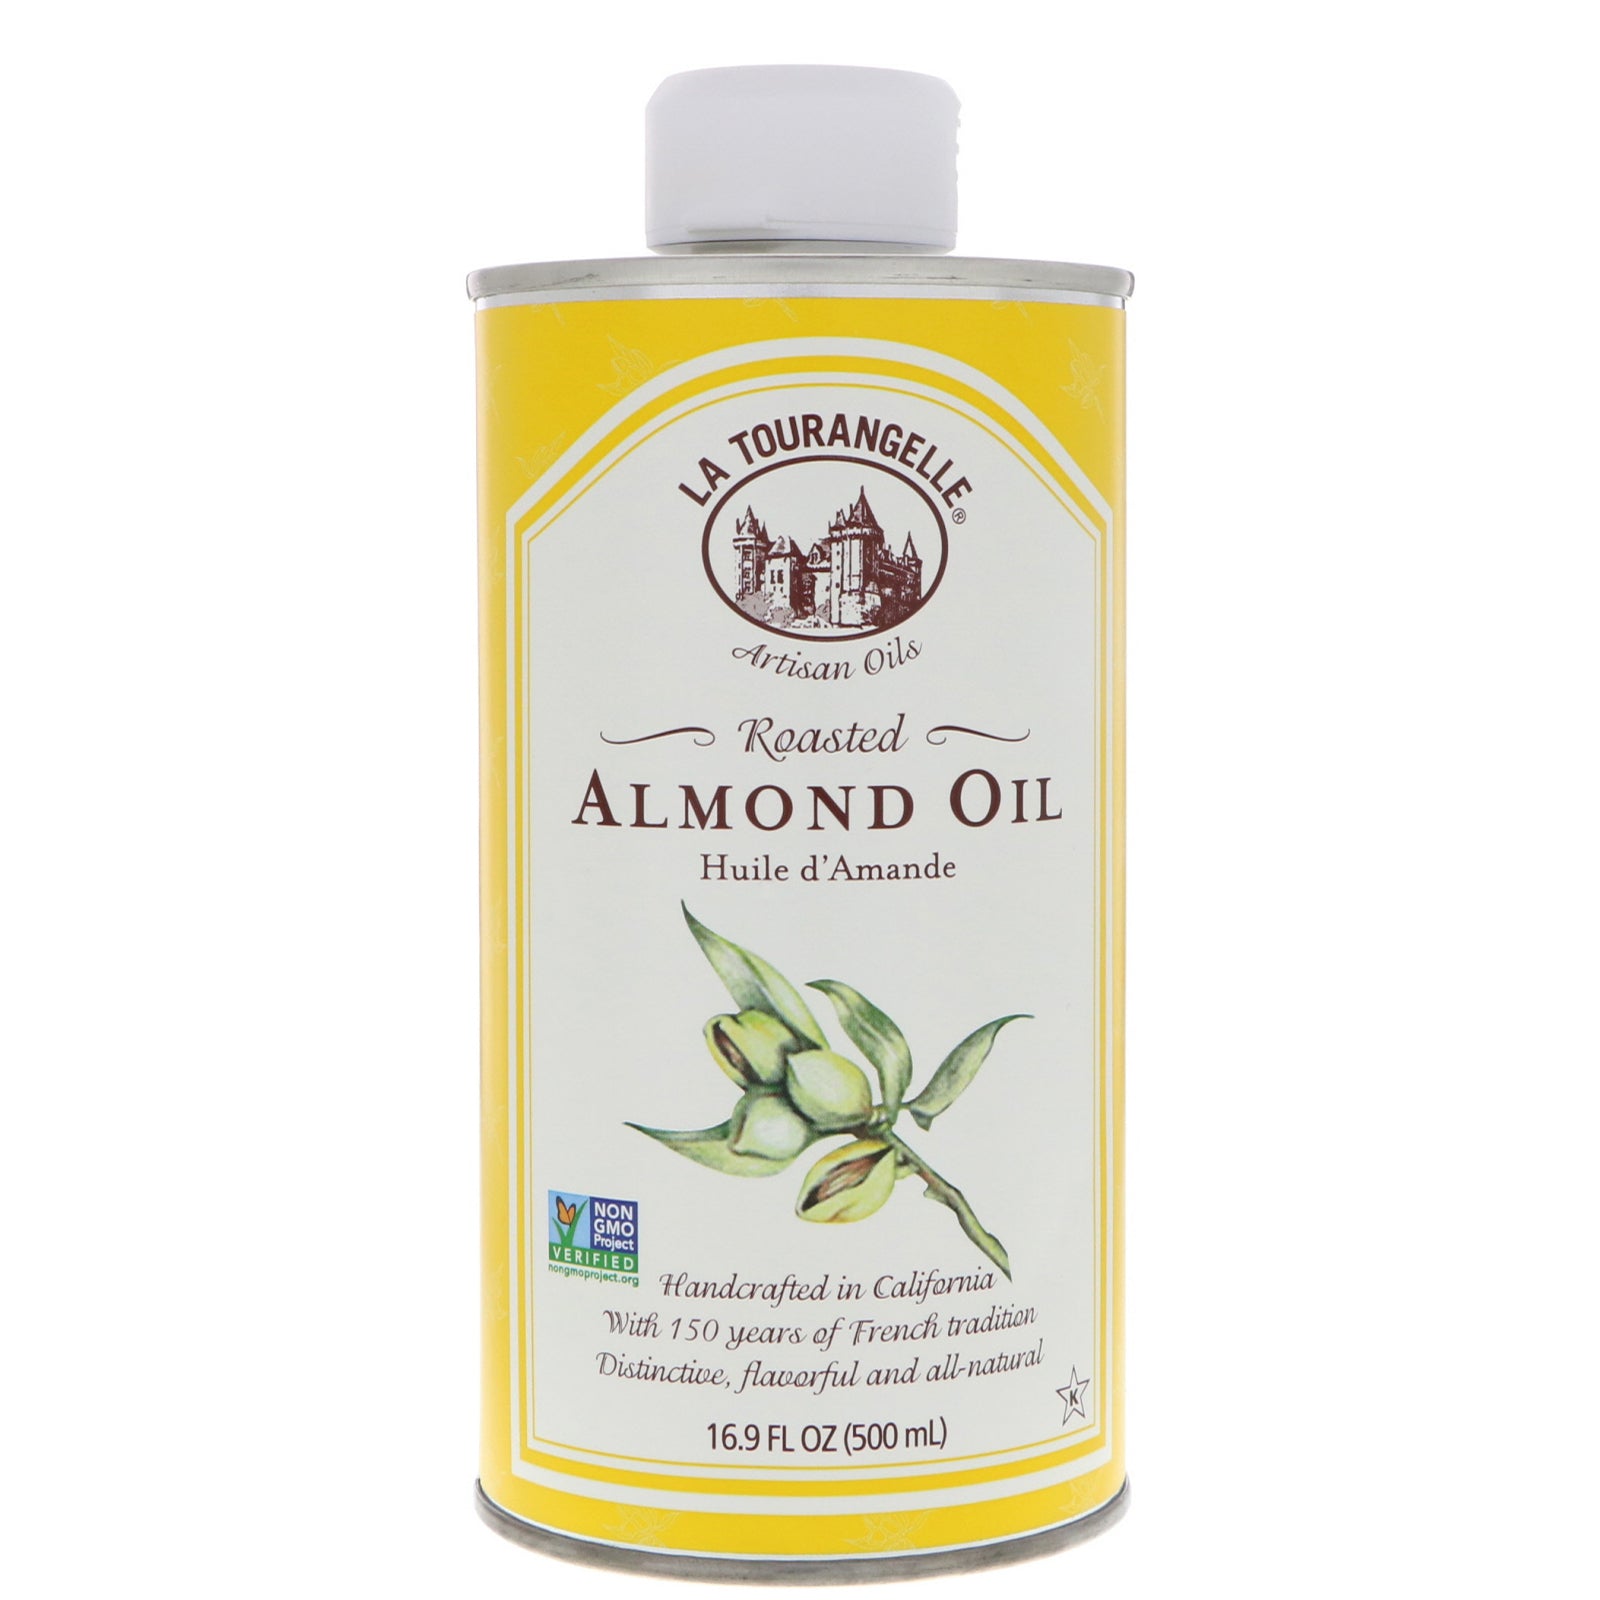 La Tourangelle, Almond Oil, 16.9 oz